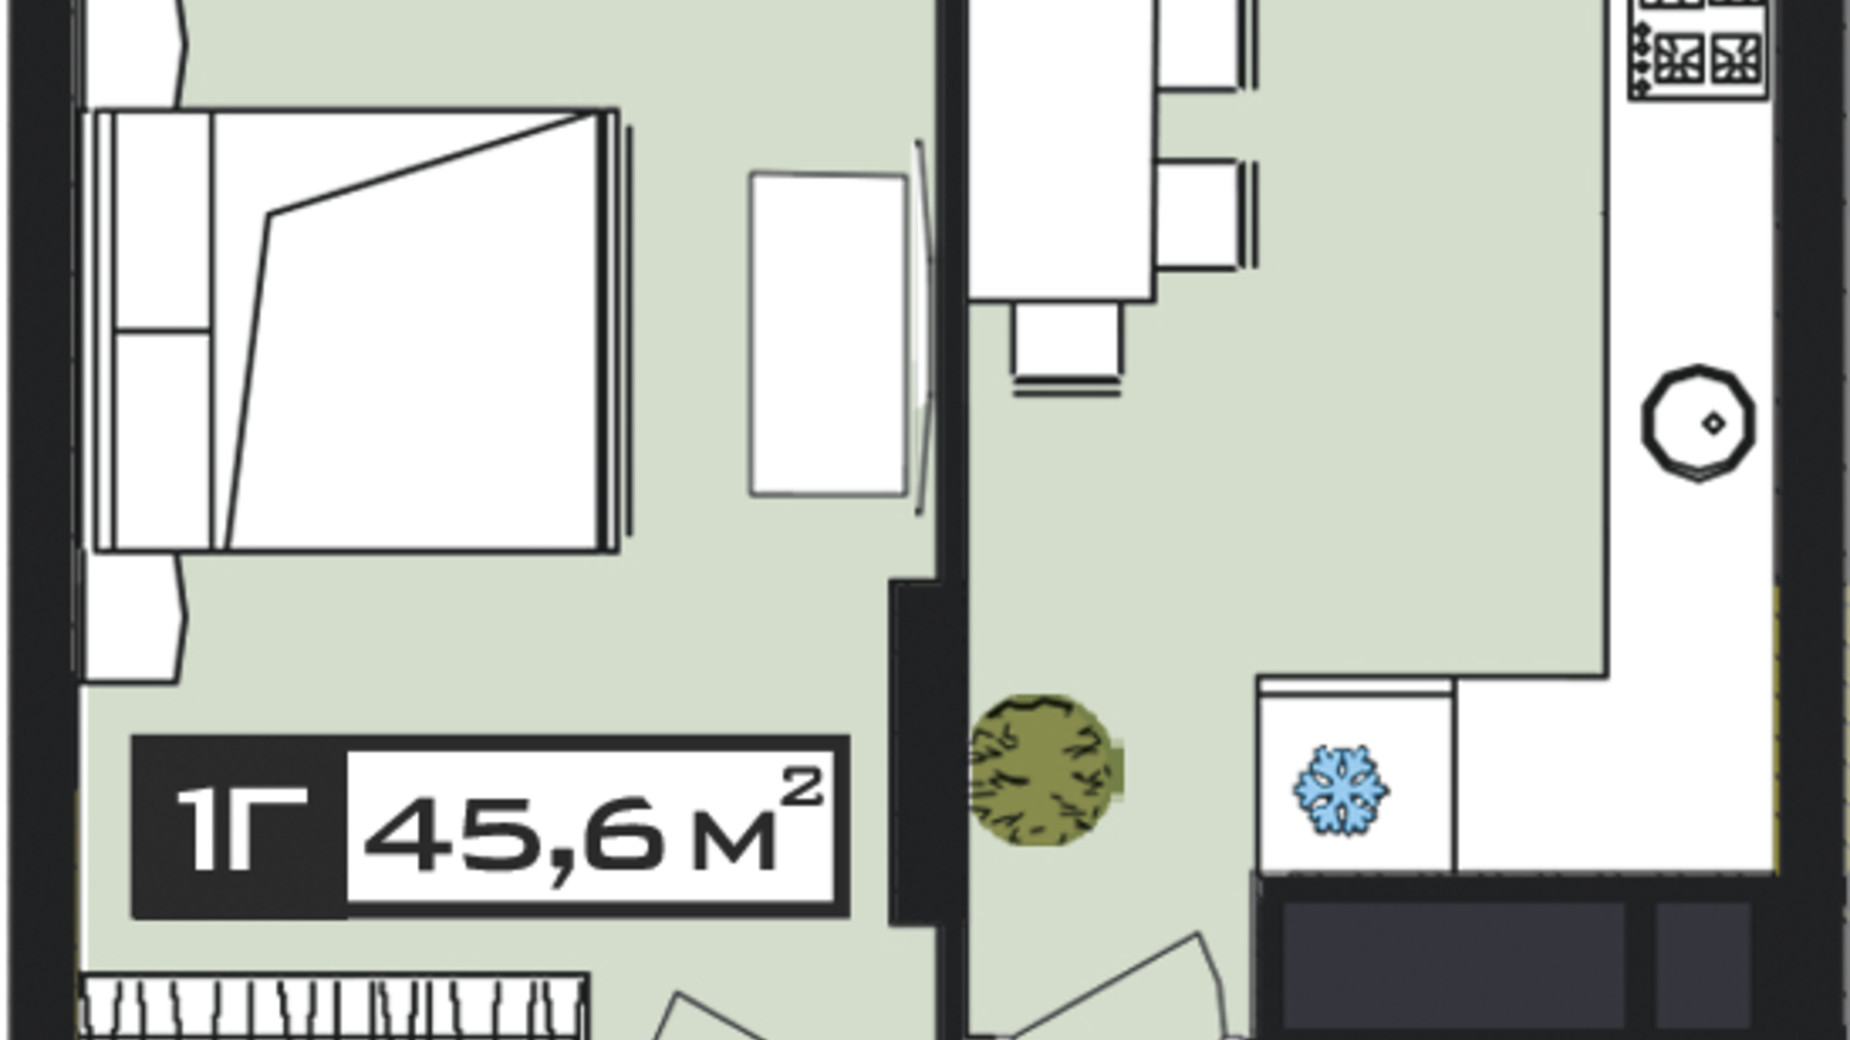 Планування 1-кімнатної квартири в ЖК Peyot 45.6 м², фото 506409